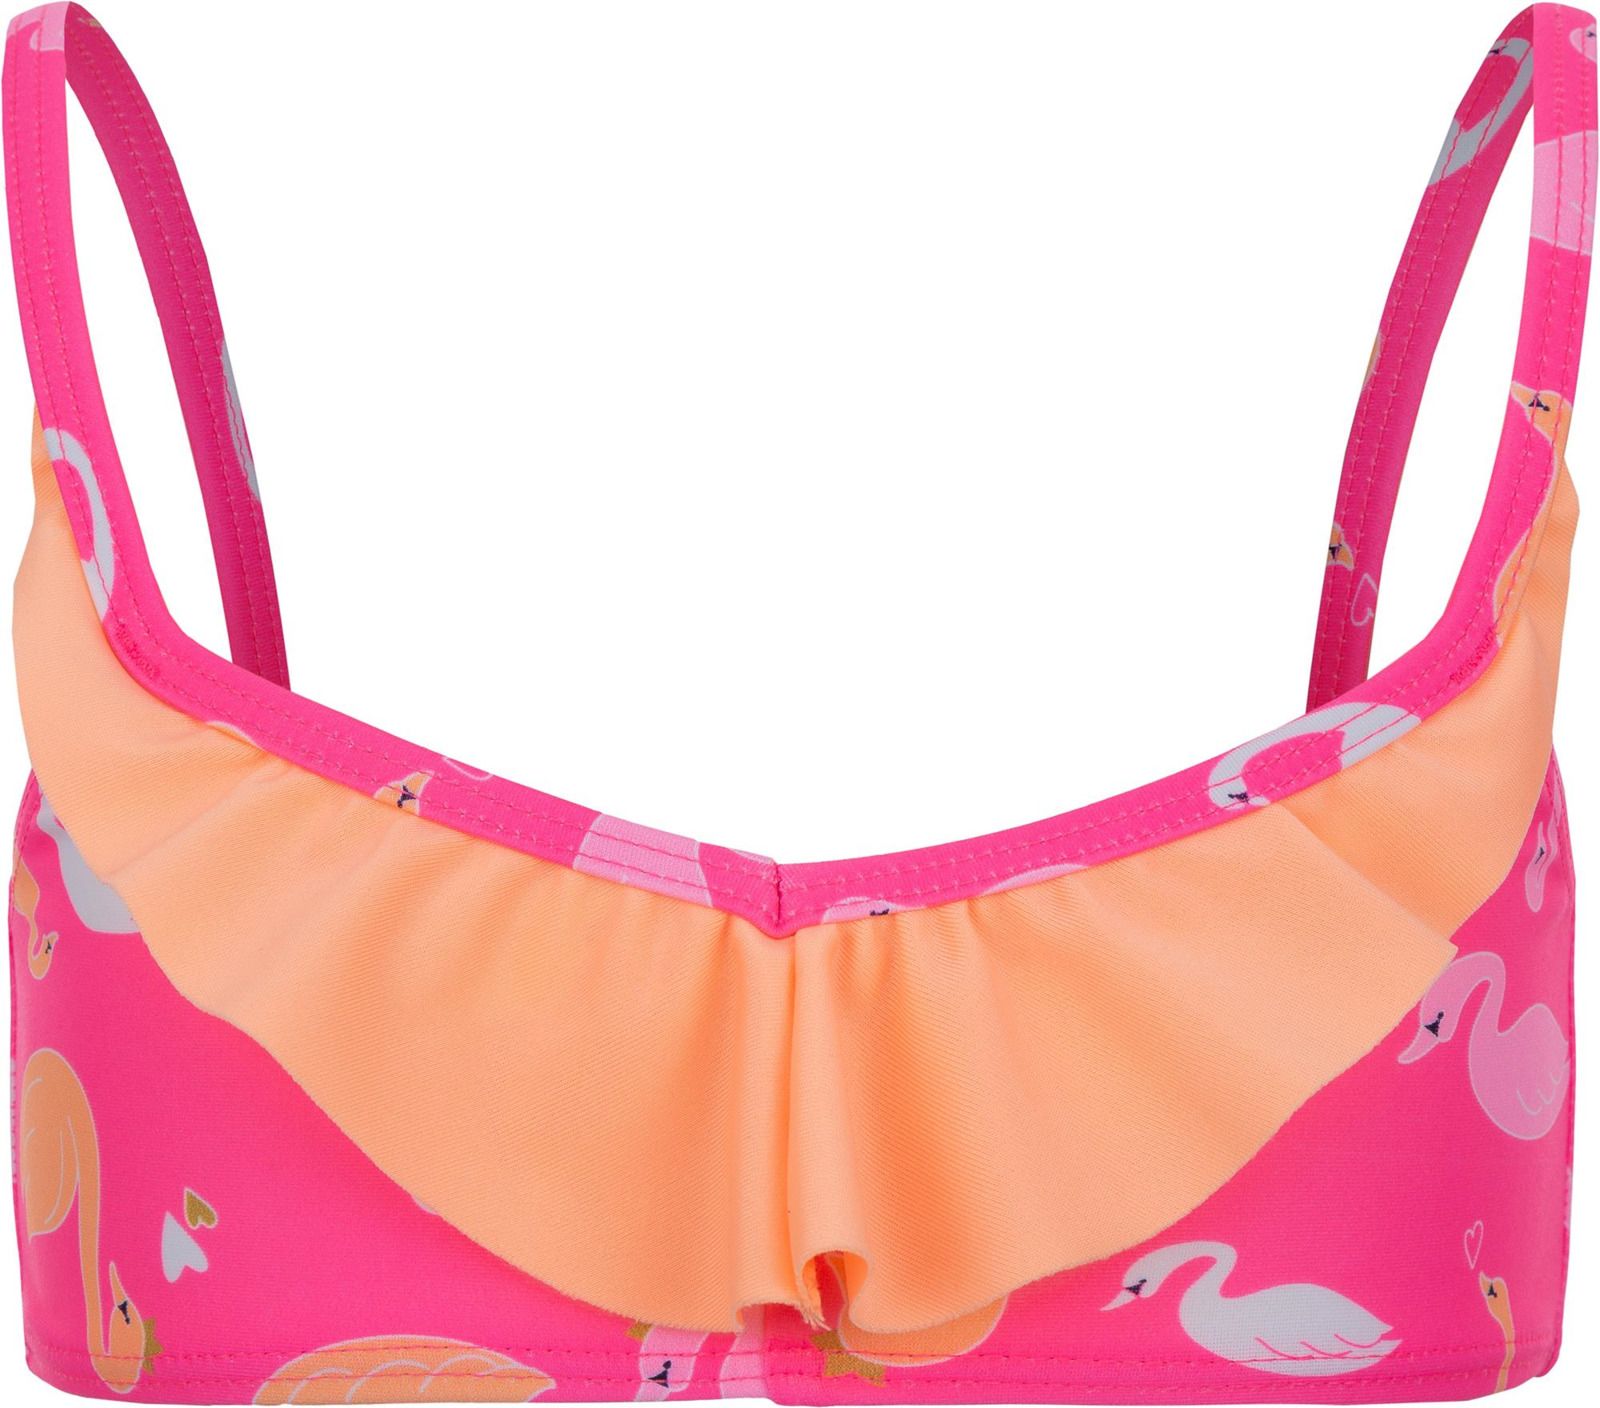     Joss Girls' Swimsuit, : -. GSB07S6-X0.  116